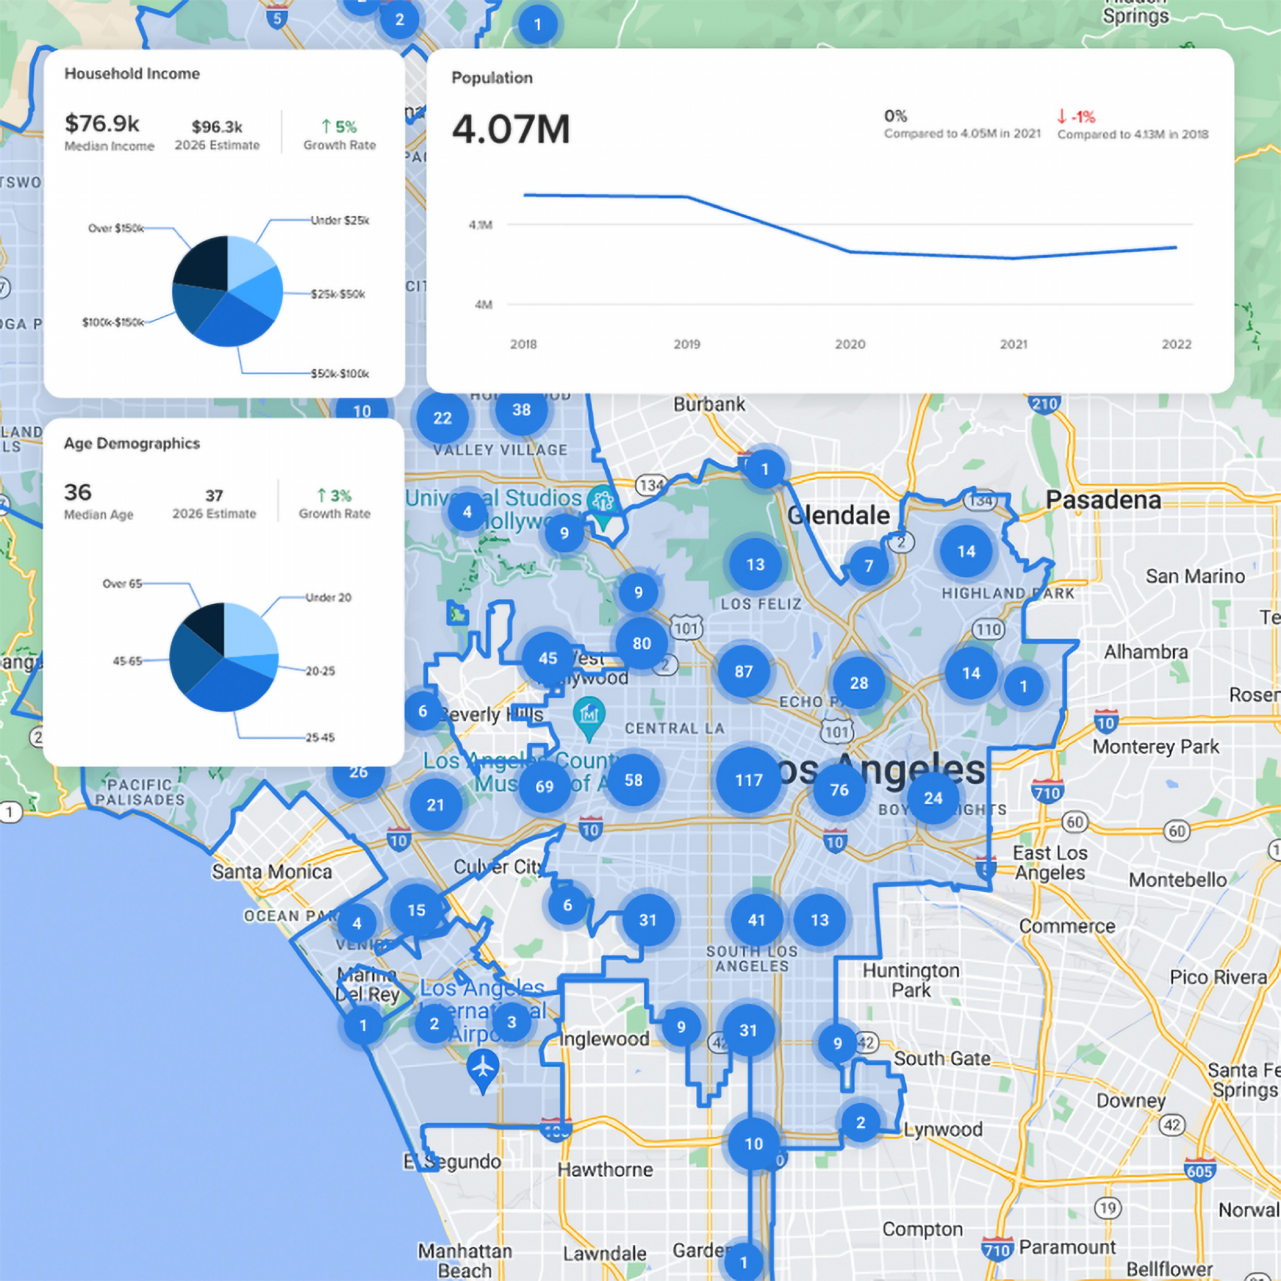 Crexi 房地产应用程序在洛杉矶地图上方显示了人口统计数据，其中蓝色圆圈显示了数值